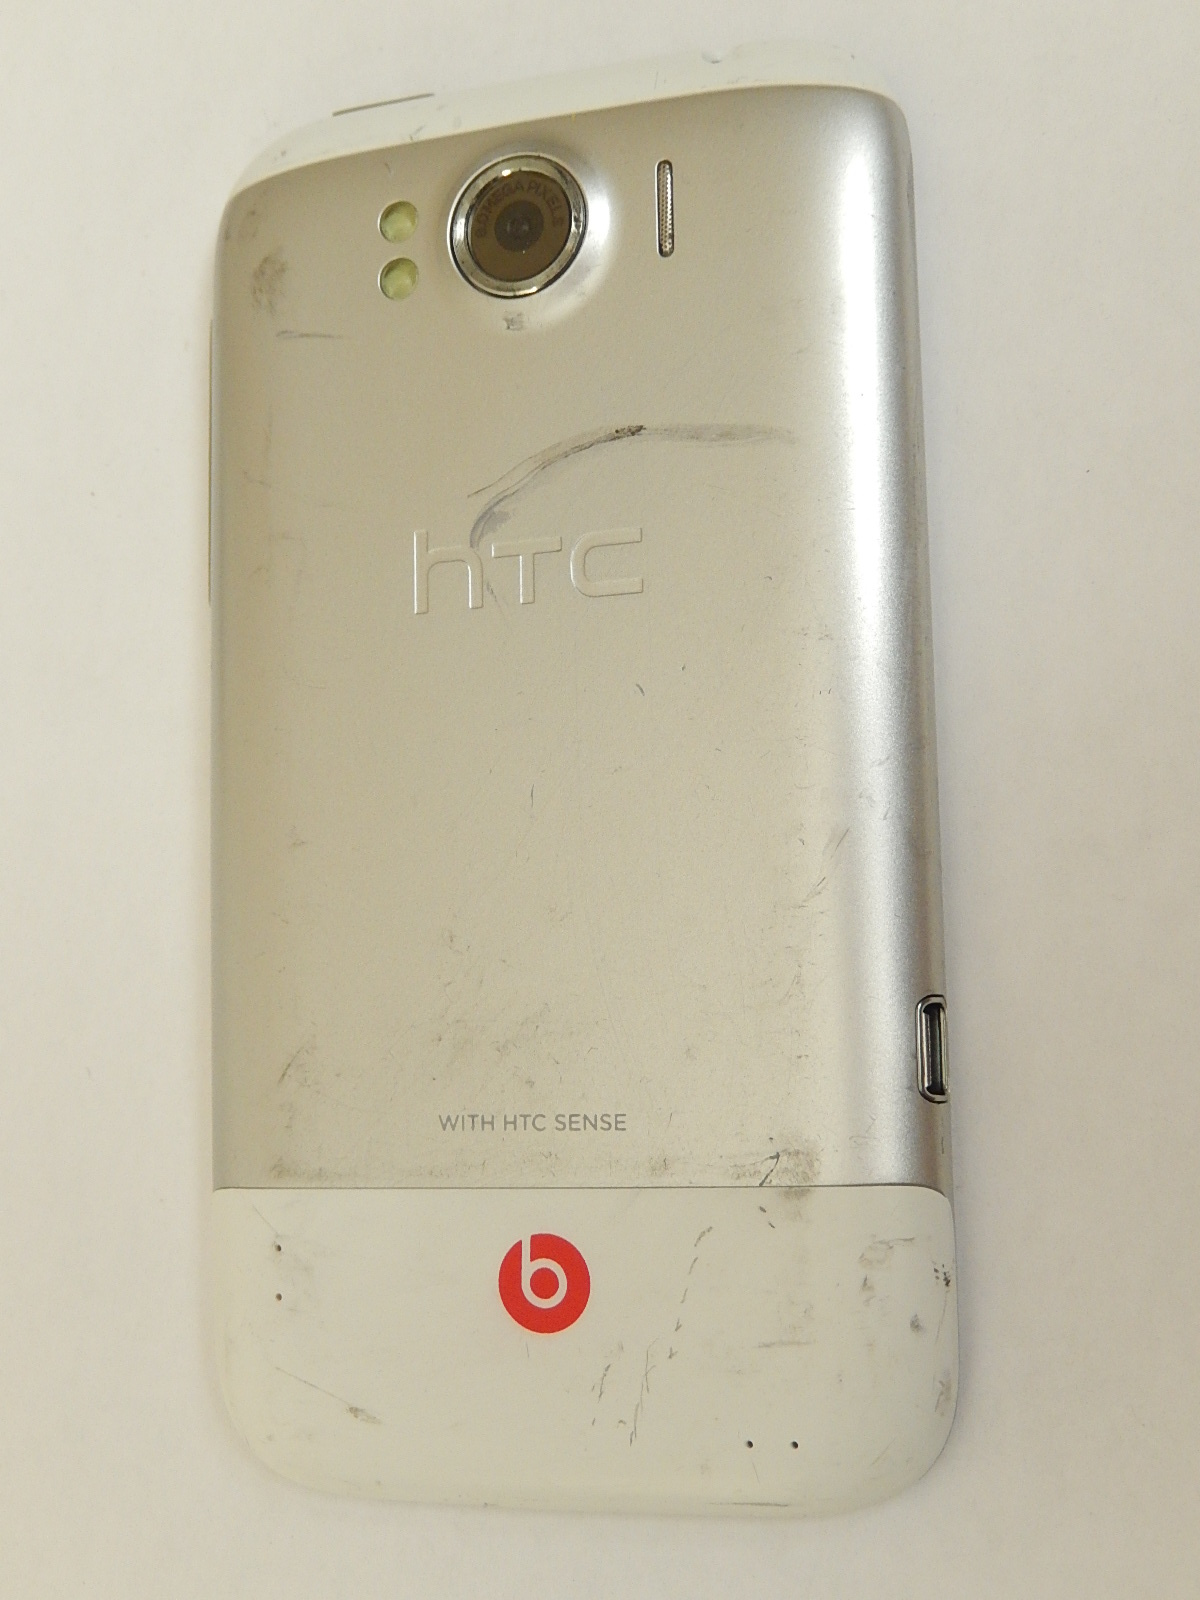 HTC SMARTPHONE FACTICE